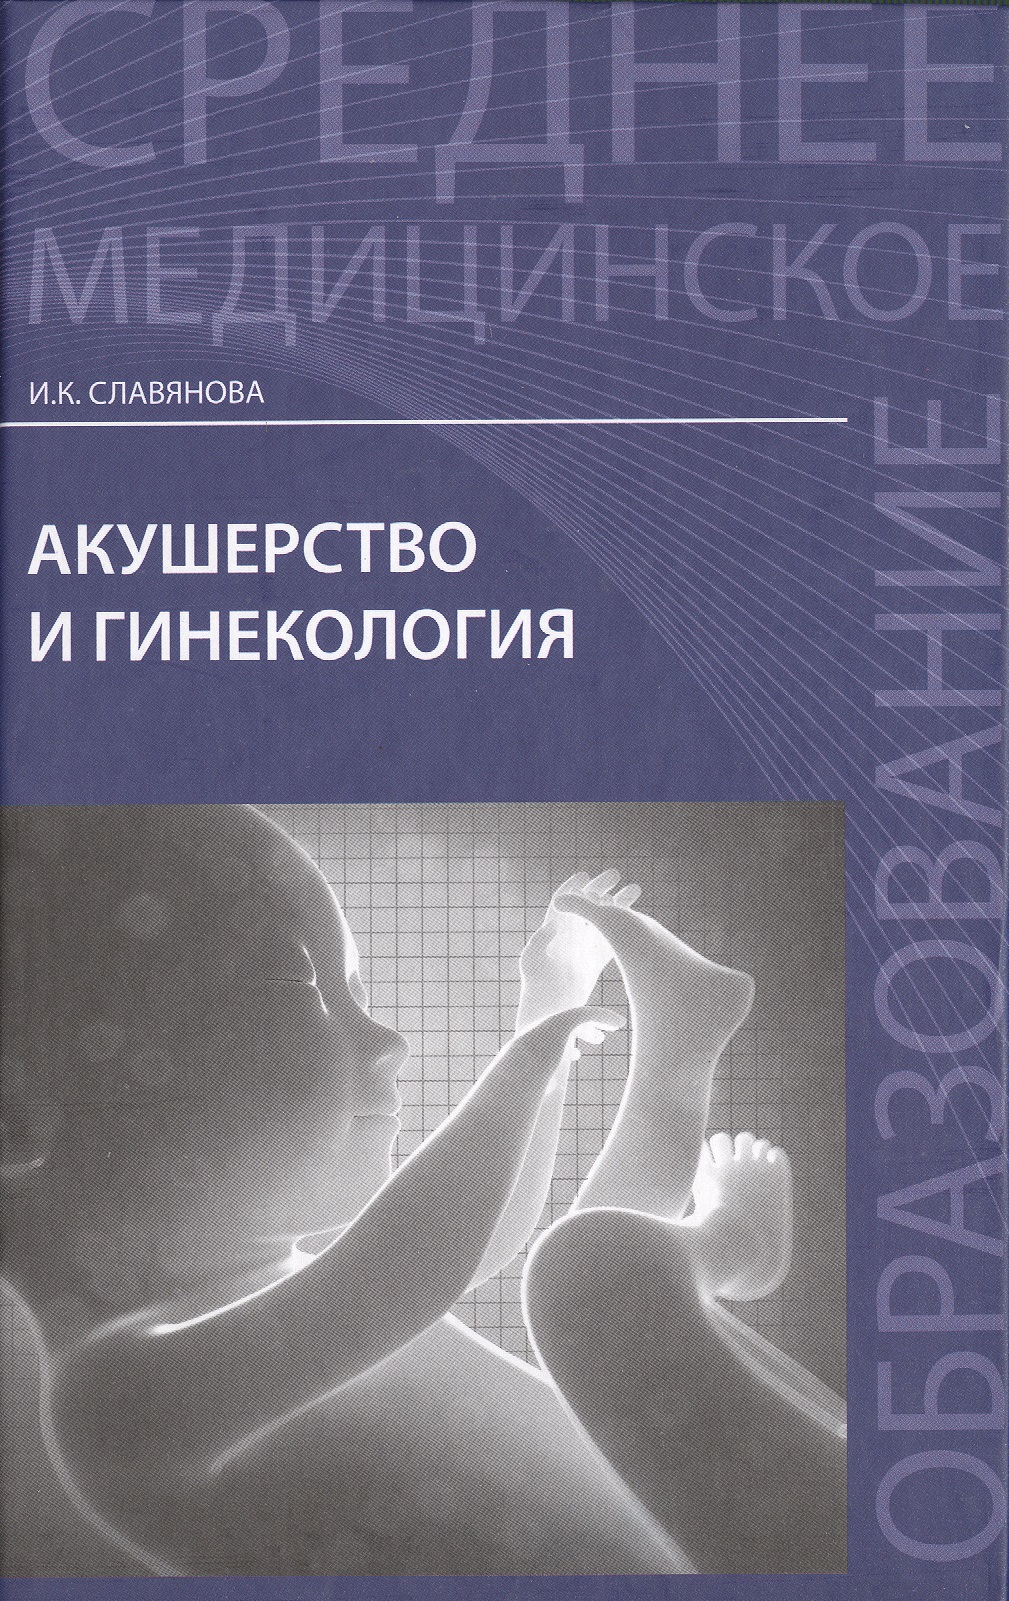 видаль 2004 справочник акушерство и гинекология Акушерство и гинекология: учебник